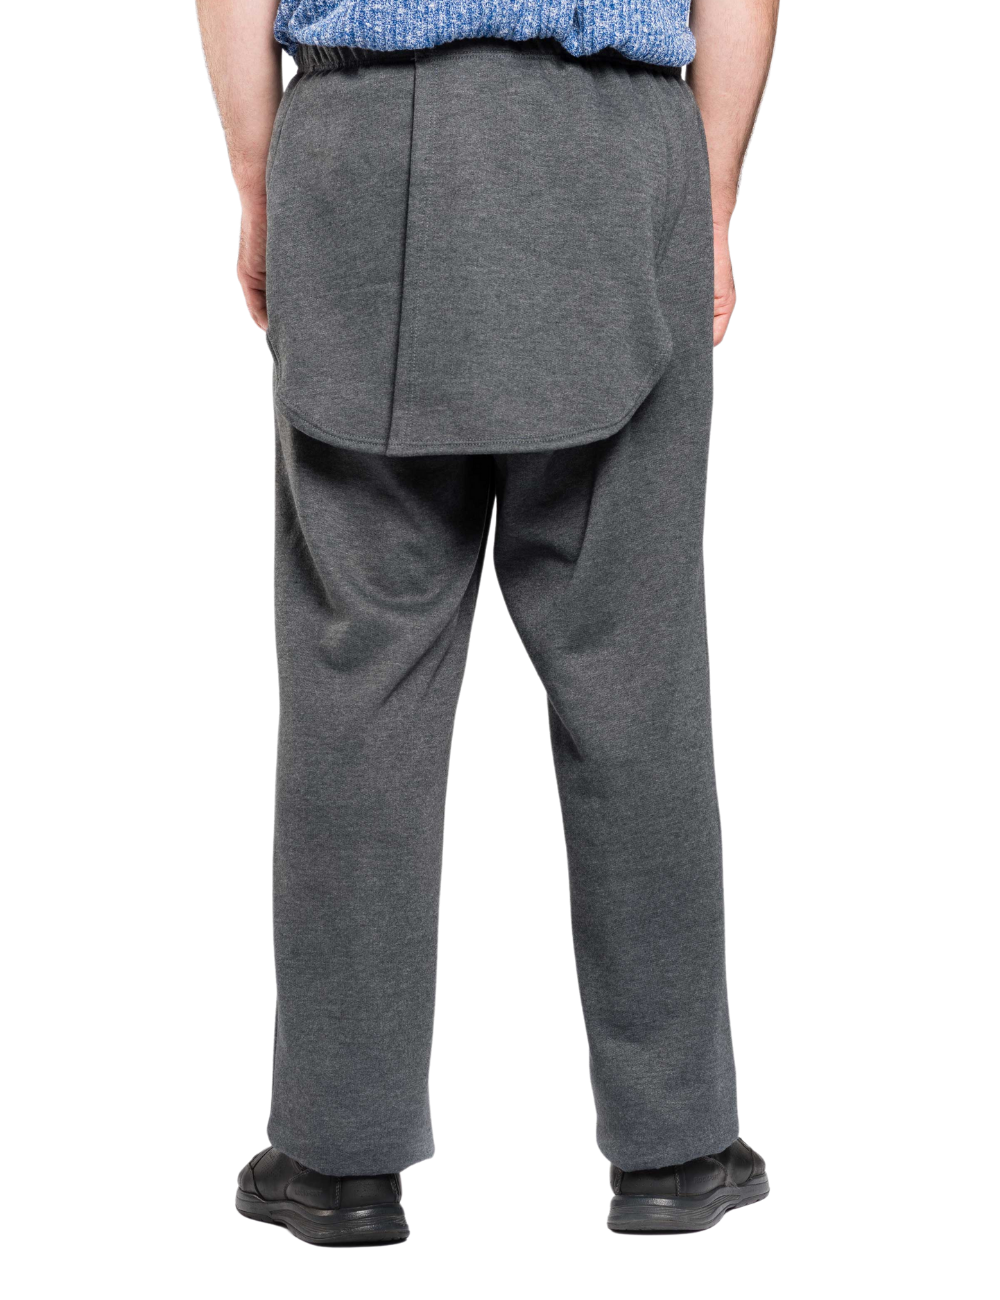 Men’s Side Zip Adaptive Fleece Tearaway Pants for Seniors - Black 2XL